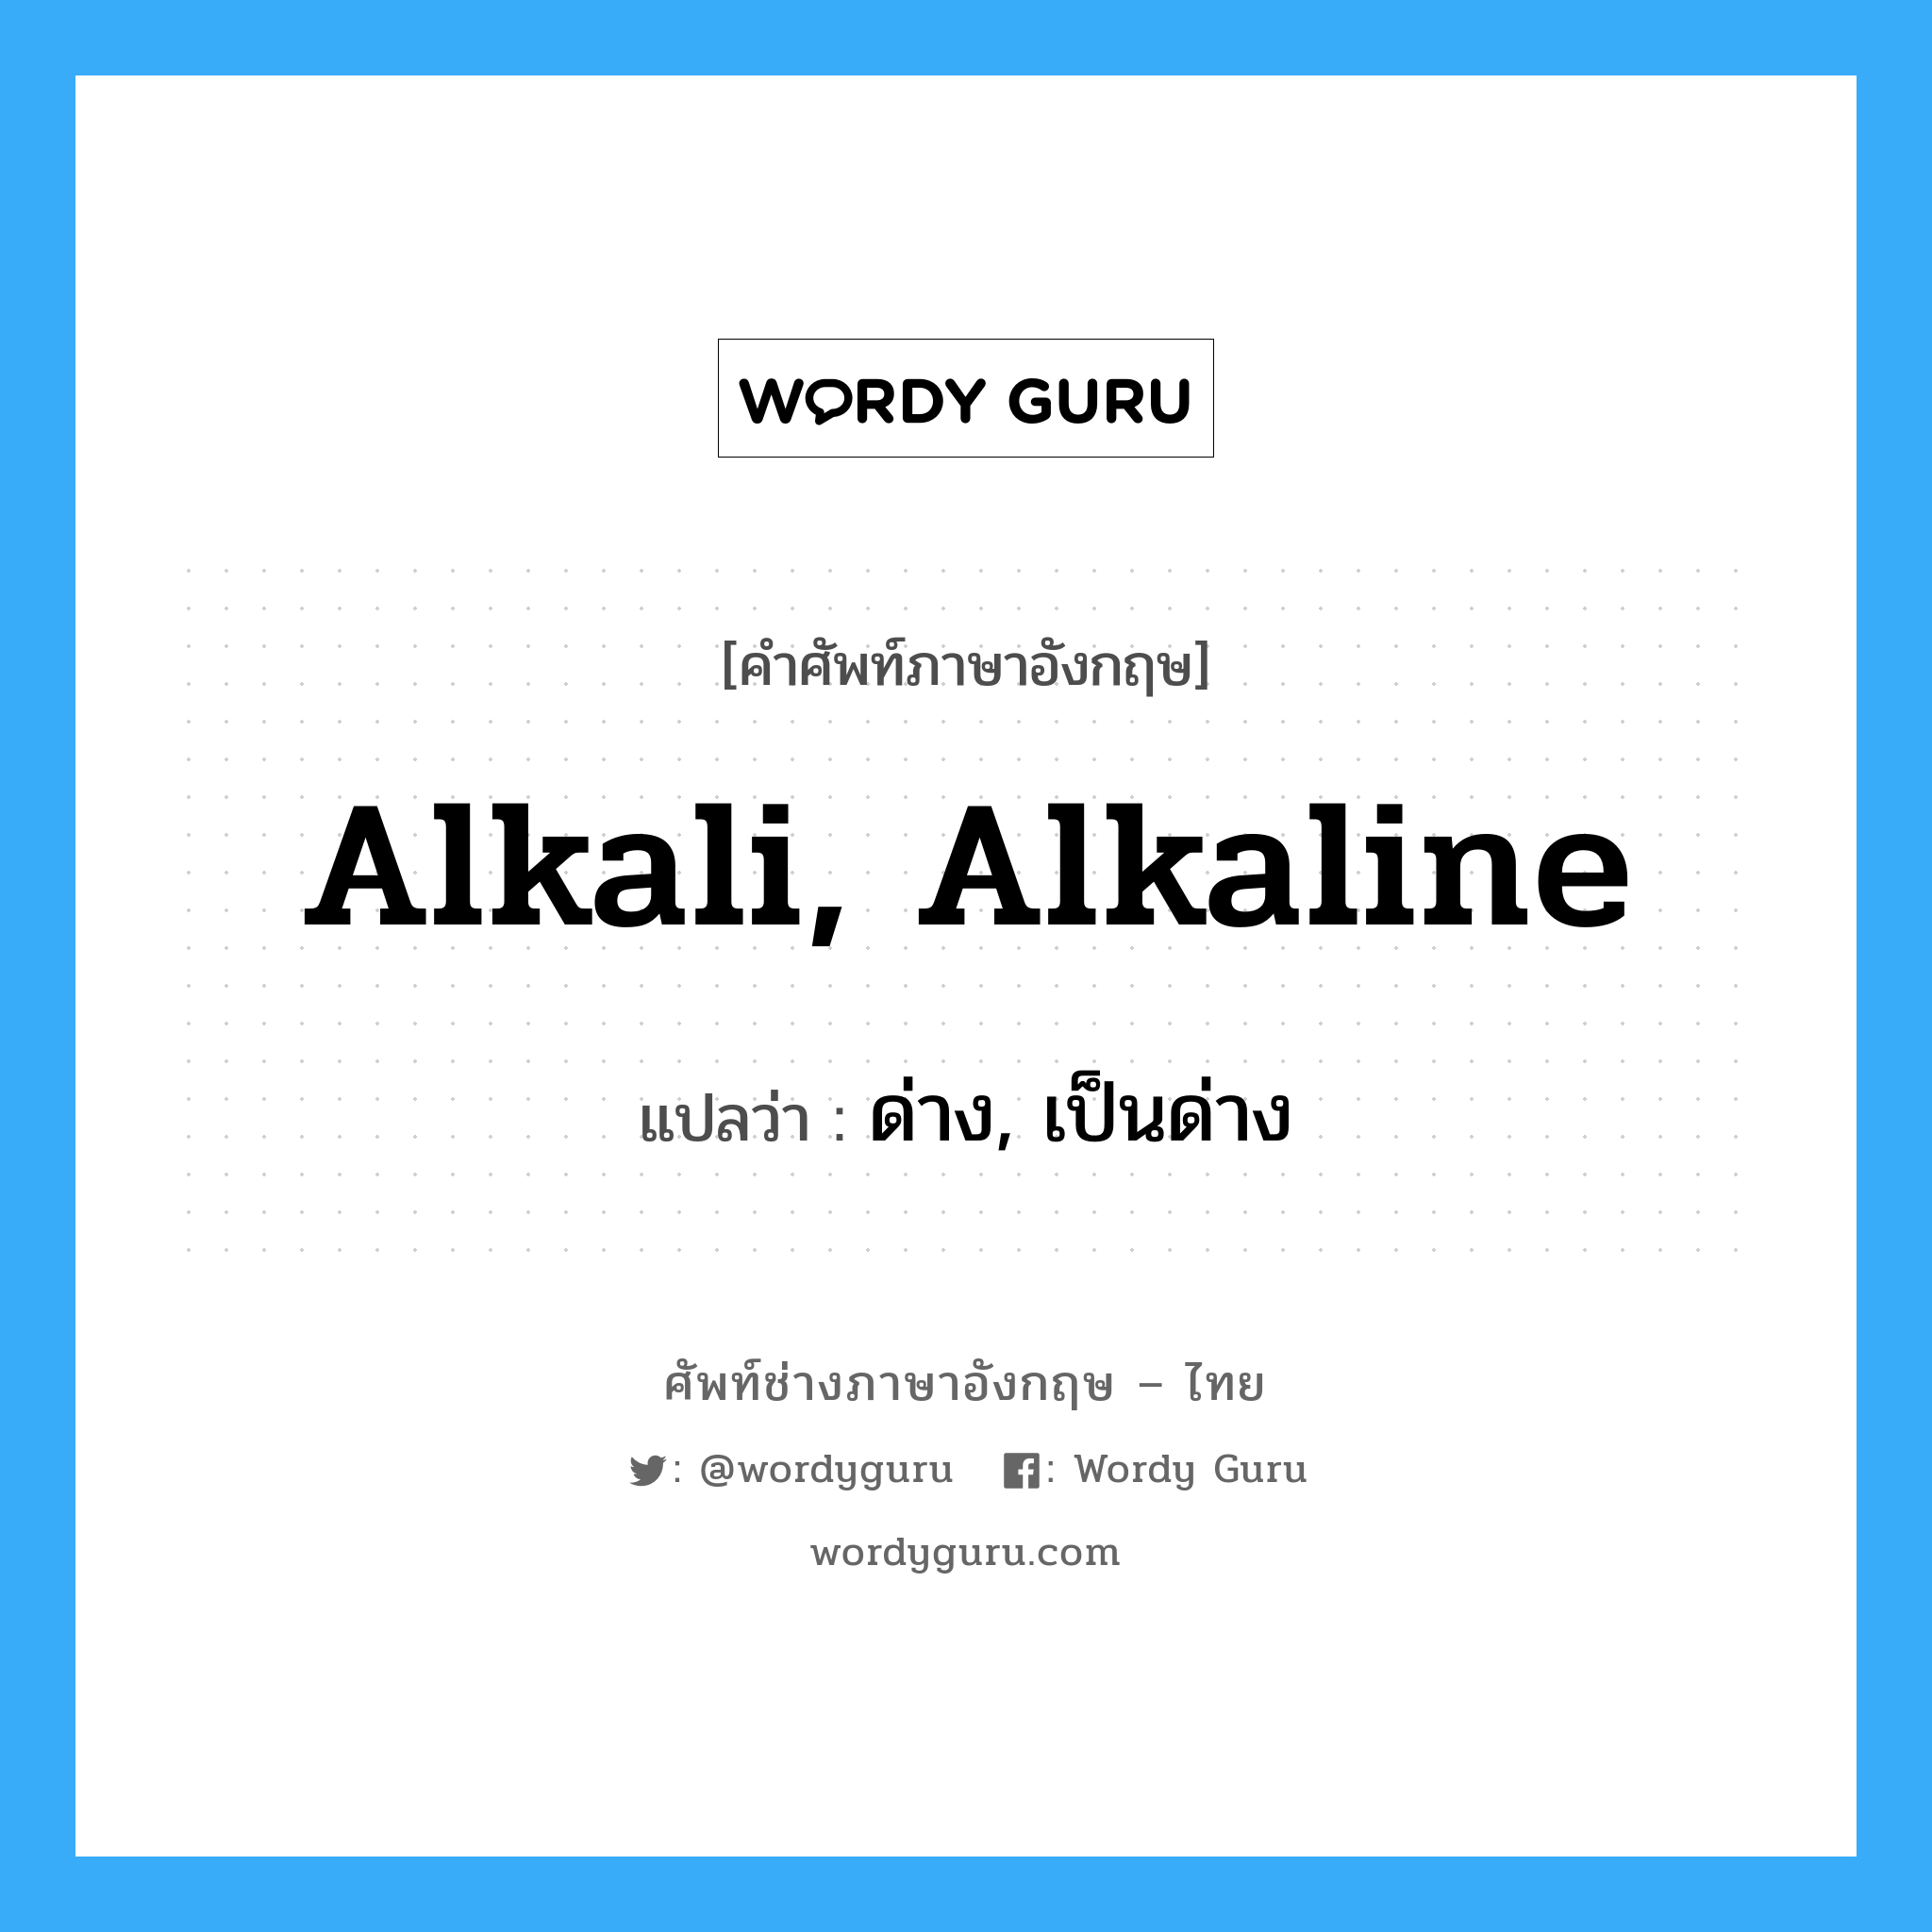 ด่าง, เป็นด่าง ภาษาอังกฤษ?, คำศัพท์ช่างภาษาอังกฤษ - ไทย ด่าง, เป็นด่าง คำศัพท์ภาษาอังกฤษ ด่าง, เป็นด่าง แปลว่า alkali, alkaline